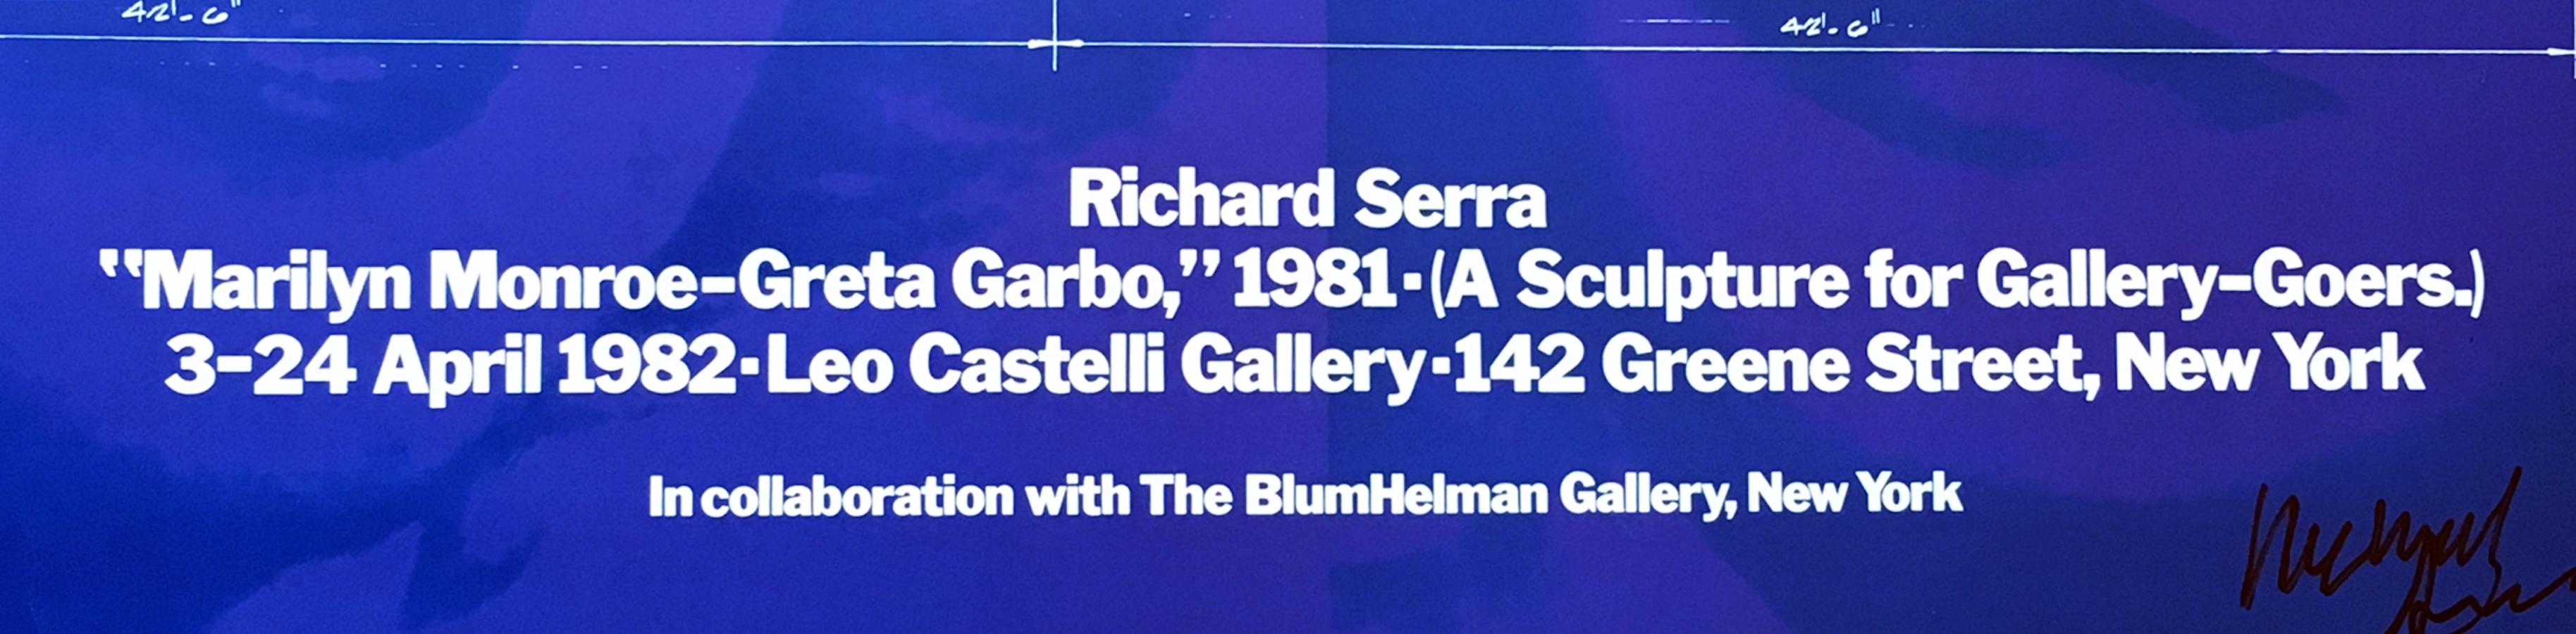 Richard Serra
Marilyn Monroe - Greta Garbo Poster (handsigniert), 1982
Offset-Lithografie-Poster veröffentlicht von der Leo Castelli Gallery Handsigniert auf der unteren Vorderseite in schwarzem Marker von Richard Serra im Jahr 2014
19 × 31 1/2